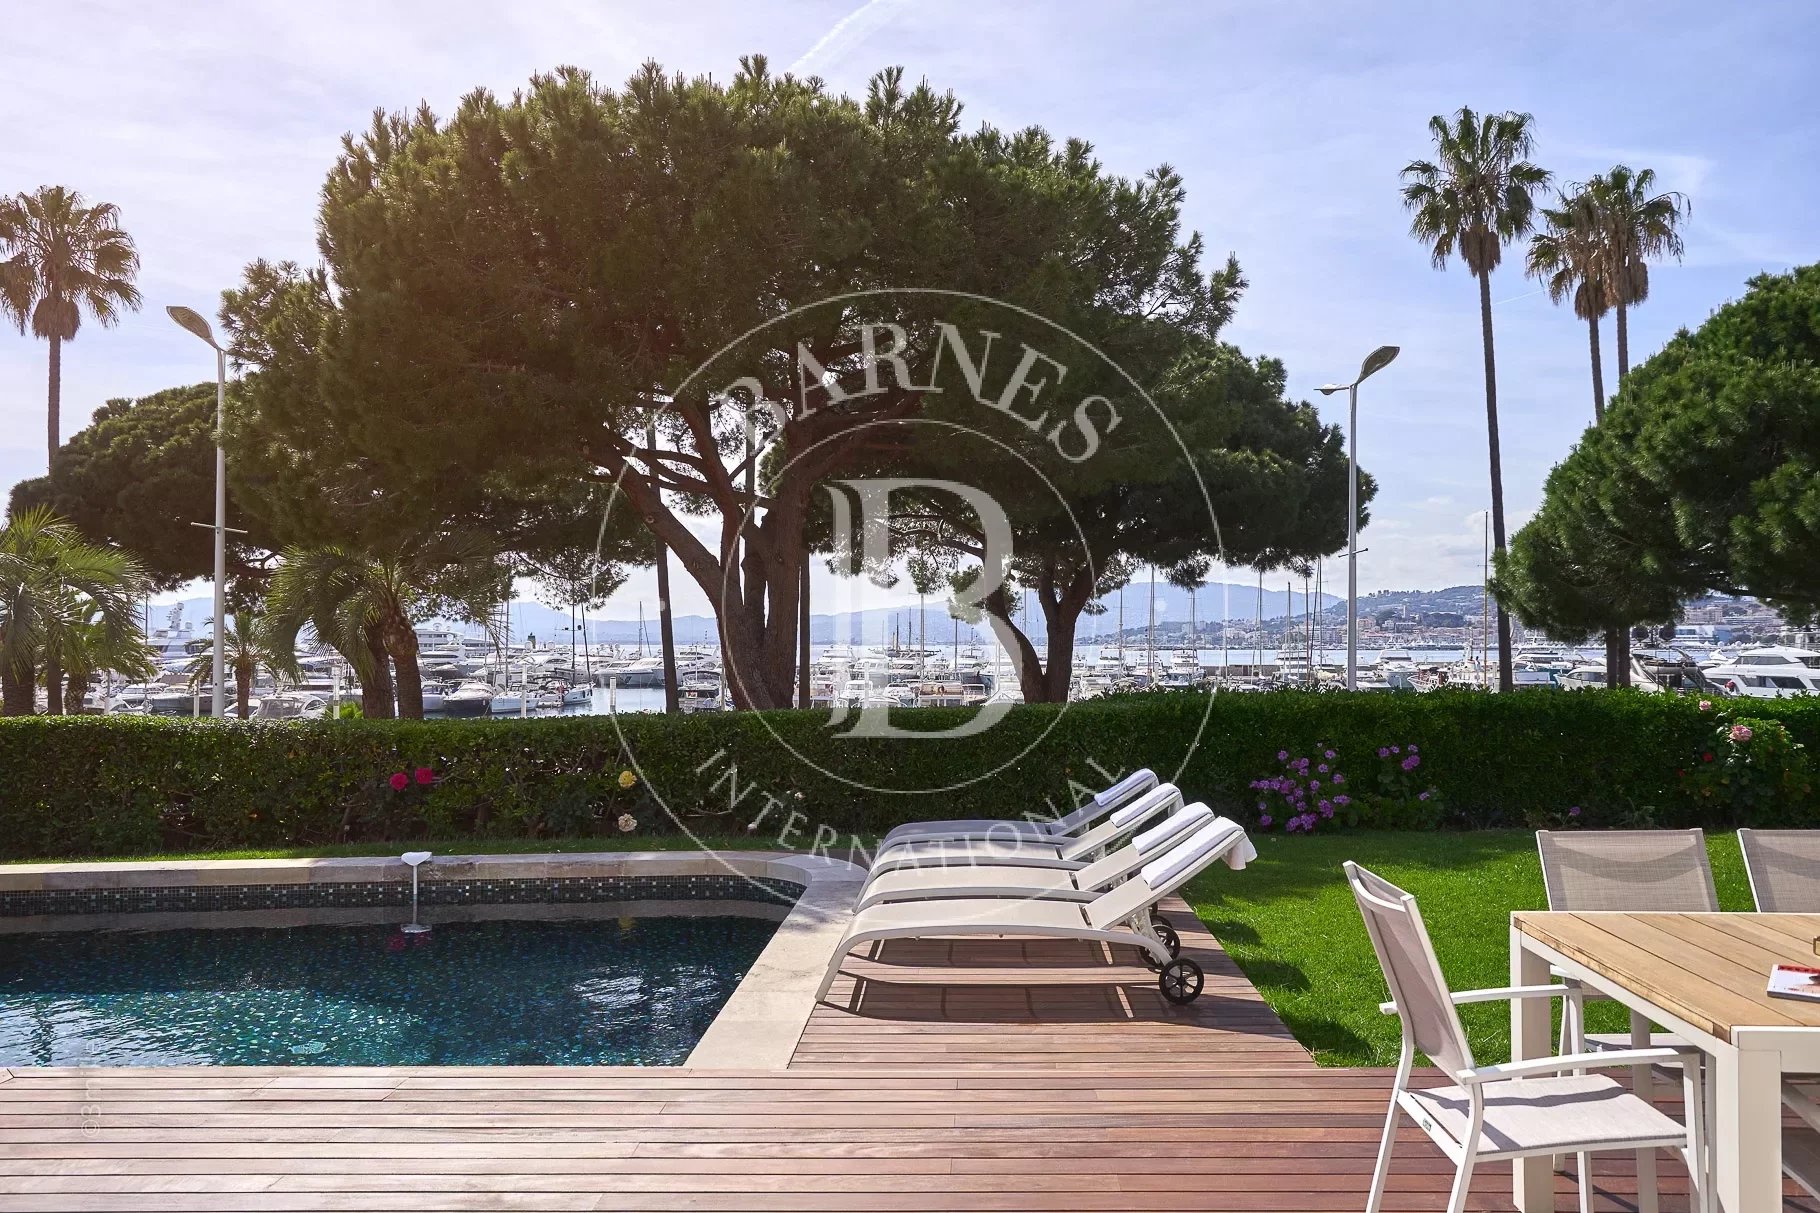 Villa Cannes - picture 4 title=